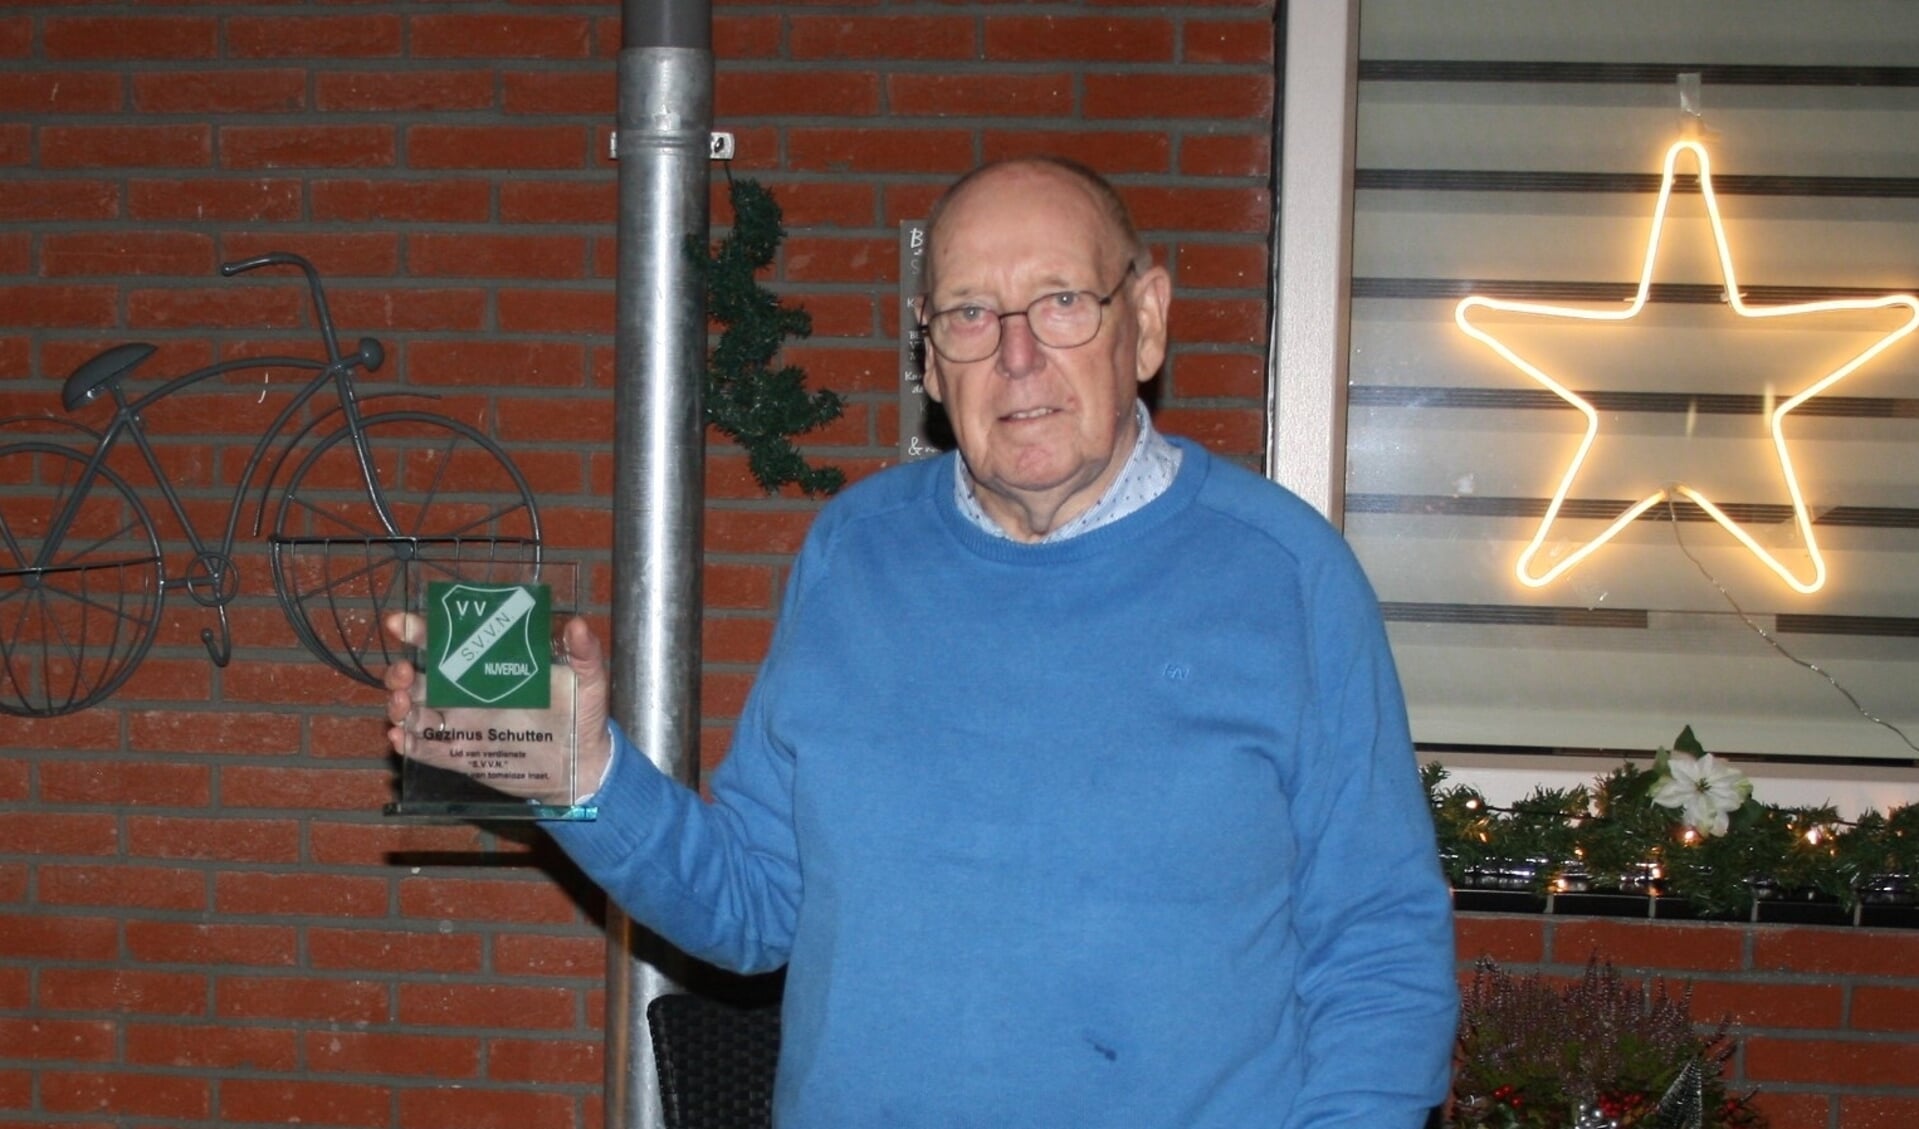 Gezinus Schutten werd benoemd tot Lid van verdienste van SVVN, de club waar hij in 1973 begon als barmedewerker.